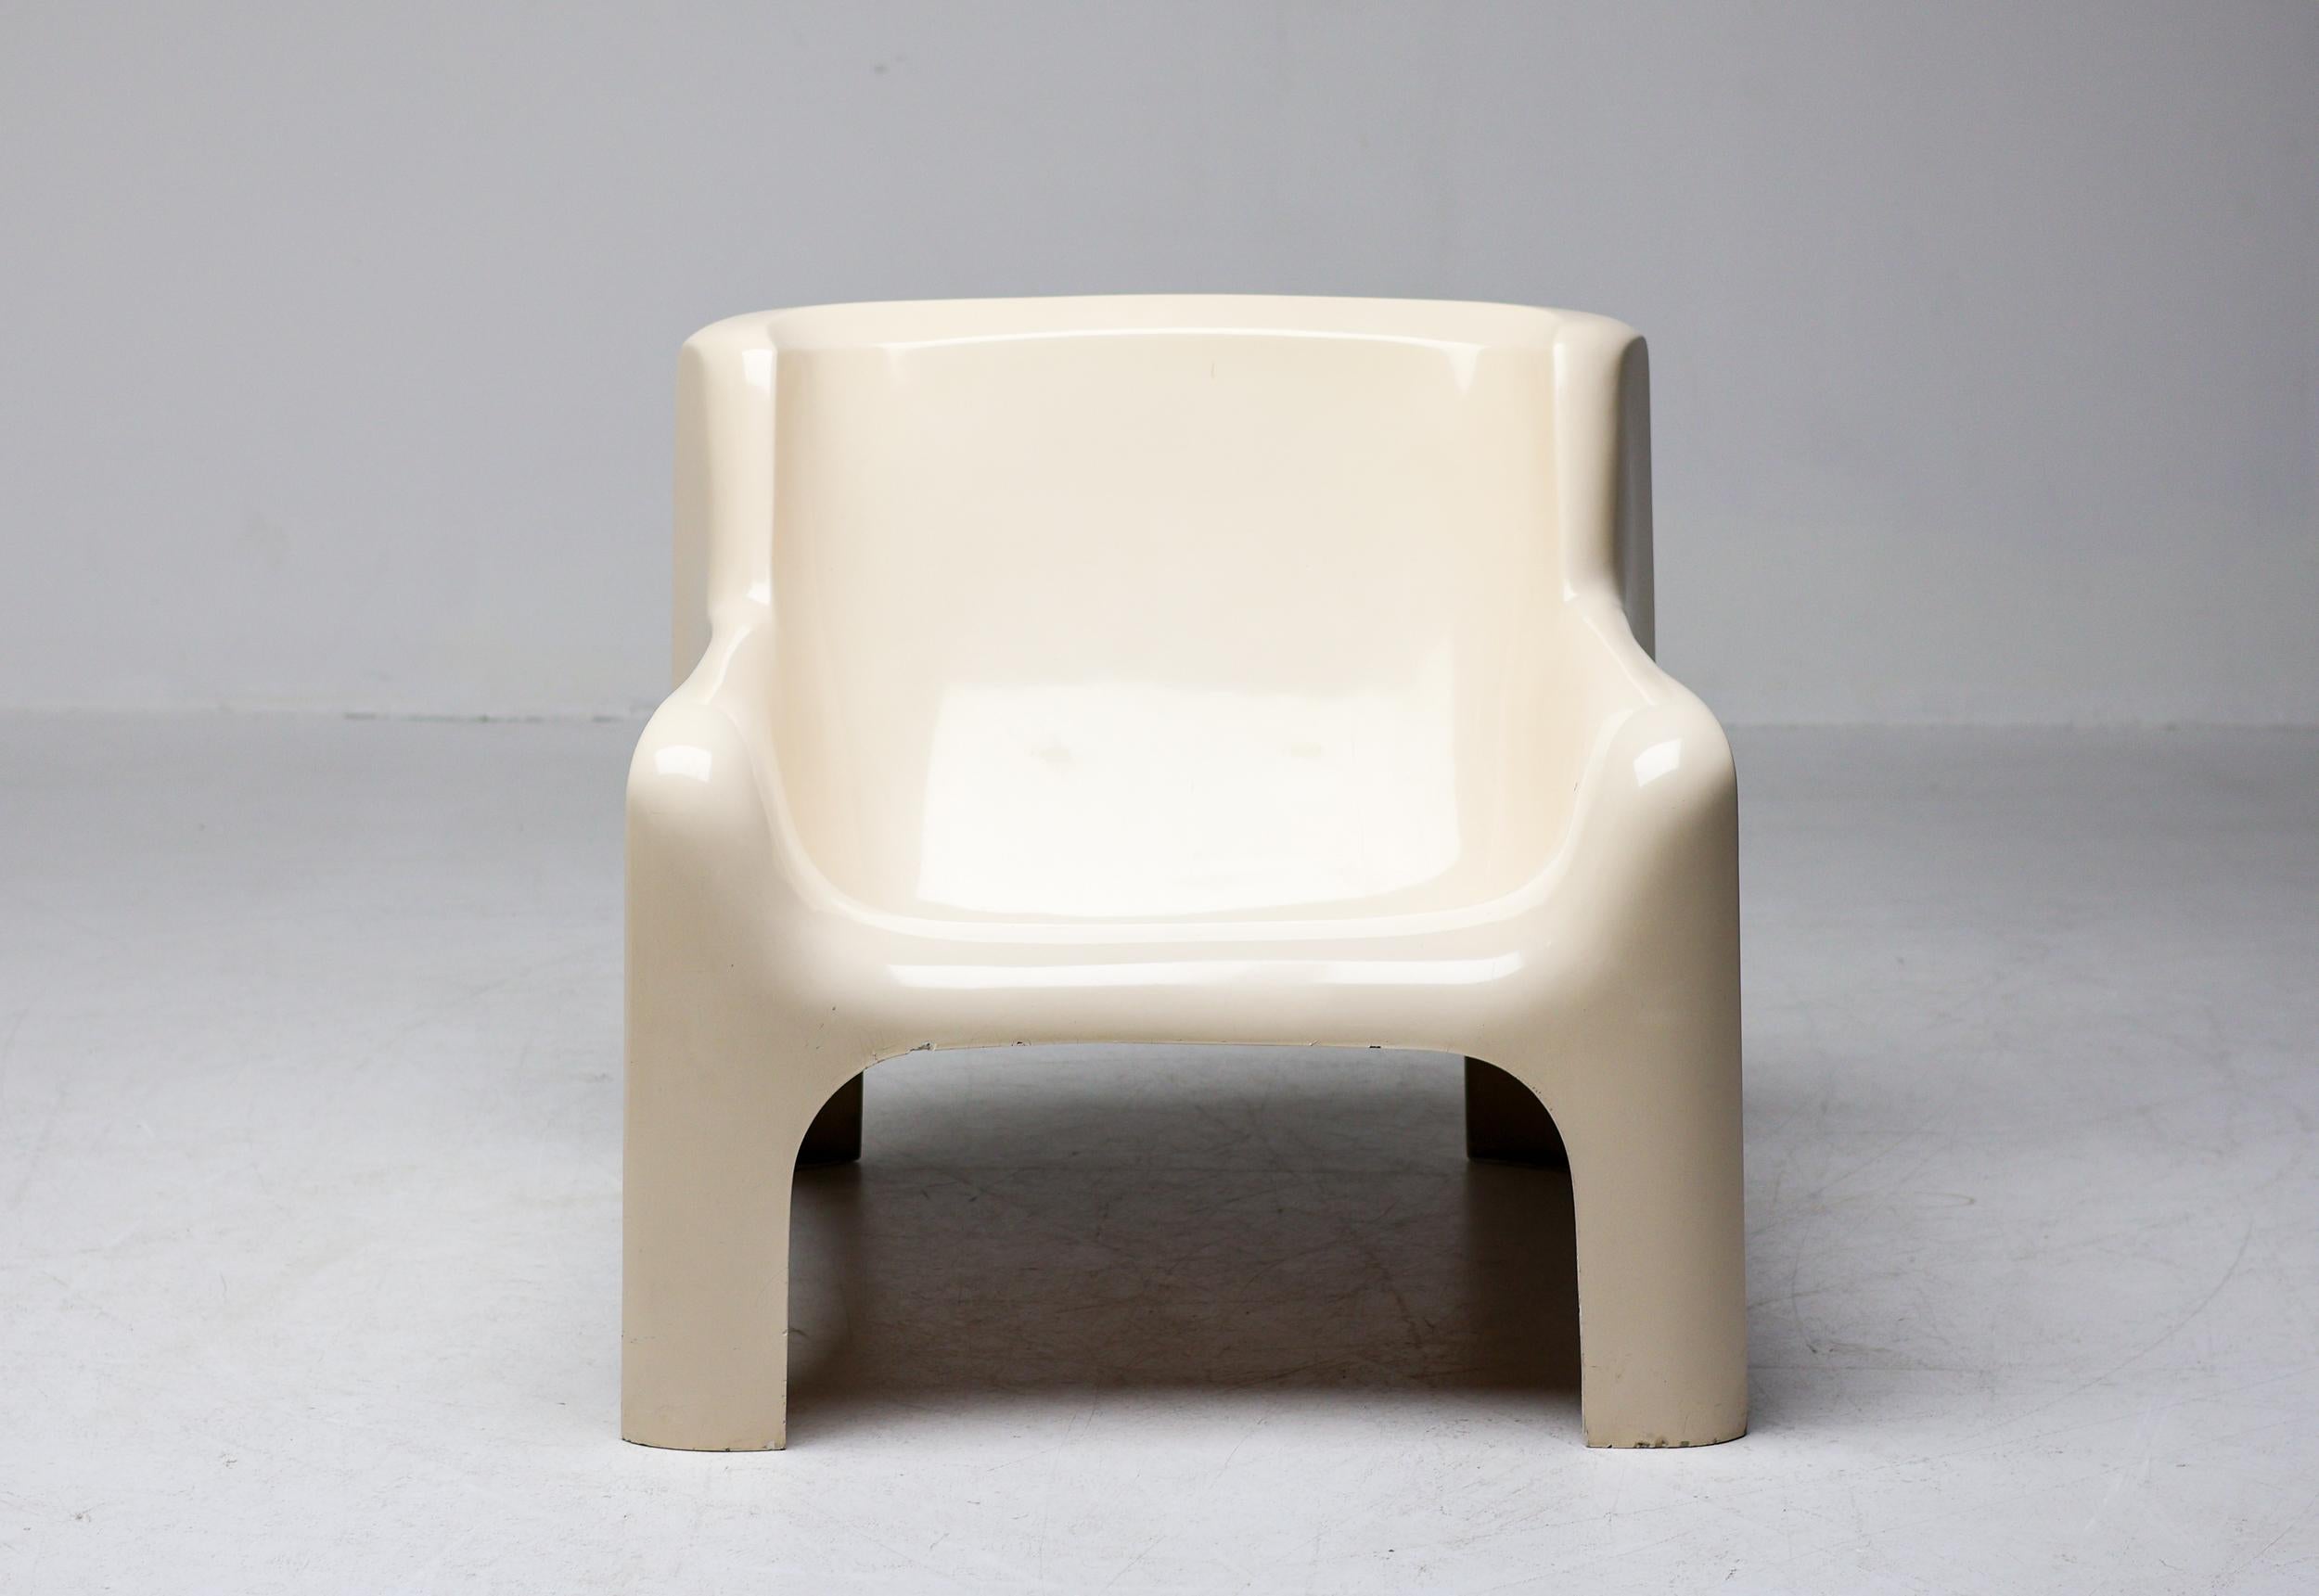 Carlo Bartoli Solar Lounge Chair aus Fiberglas, hergestellt von Arflex im Jahr 1967.
Glasfaser und Polyesterharz mit Lackierung.
Ein identisches Exemplar befindet sich in der ständigen Sammlung des MoMA in New York.
Fein alle ursprünglichen Zustand